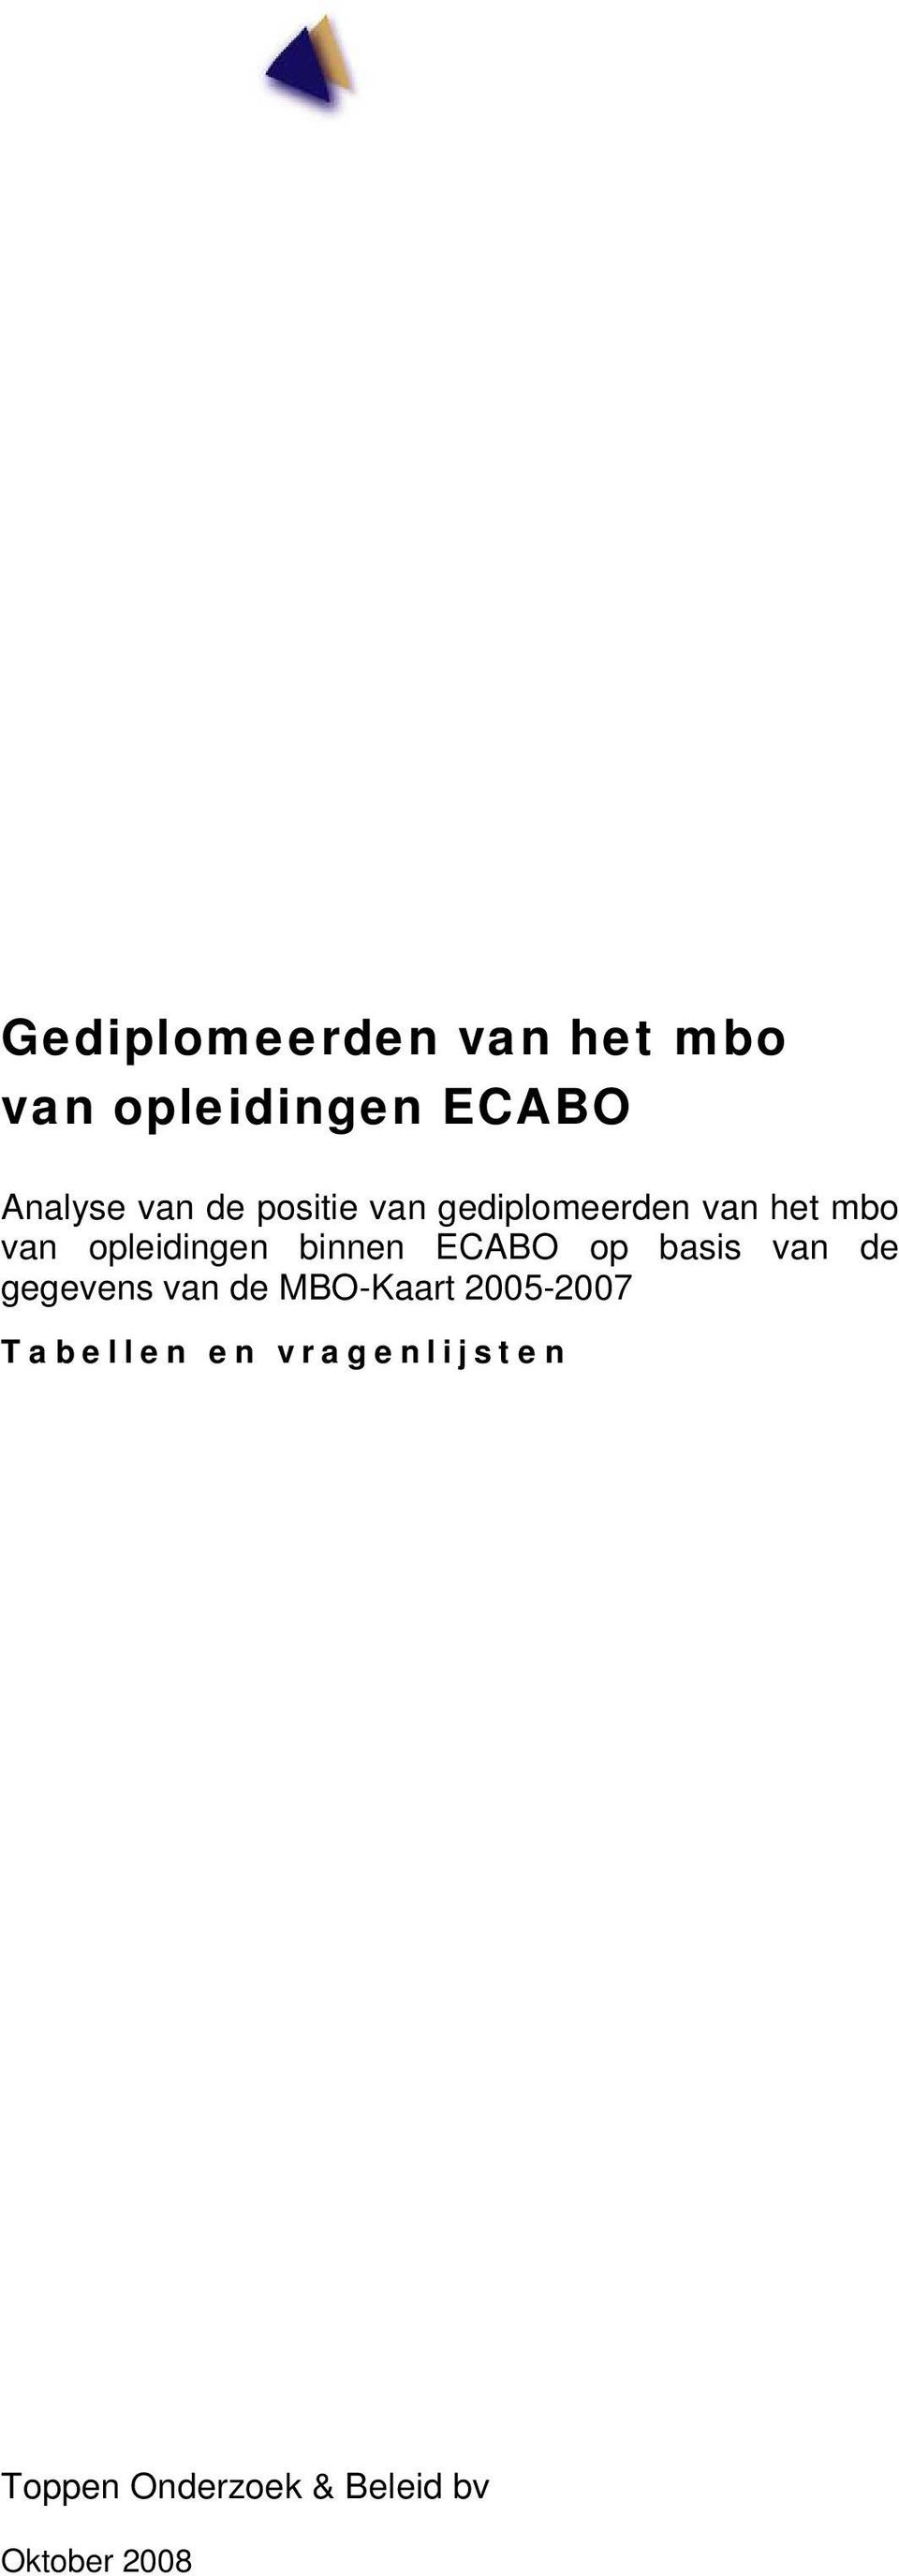 binnen ECABO op basis van de gegevens van de MBO-Kaart -